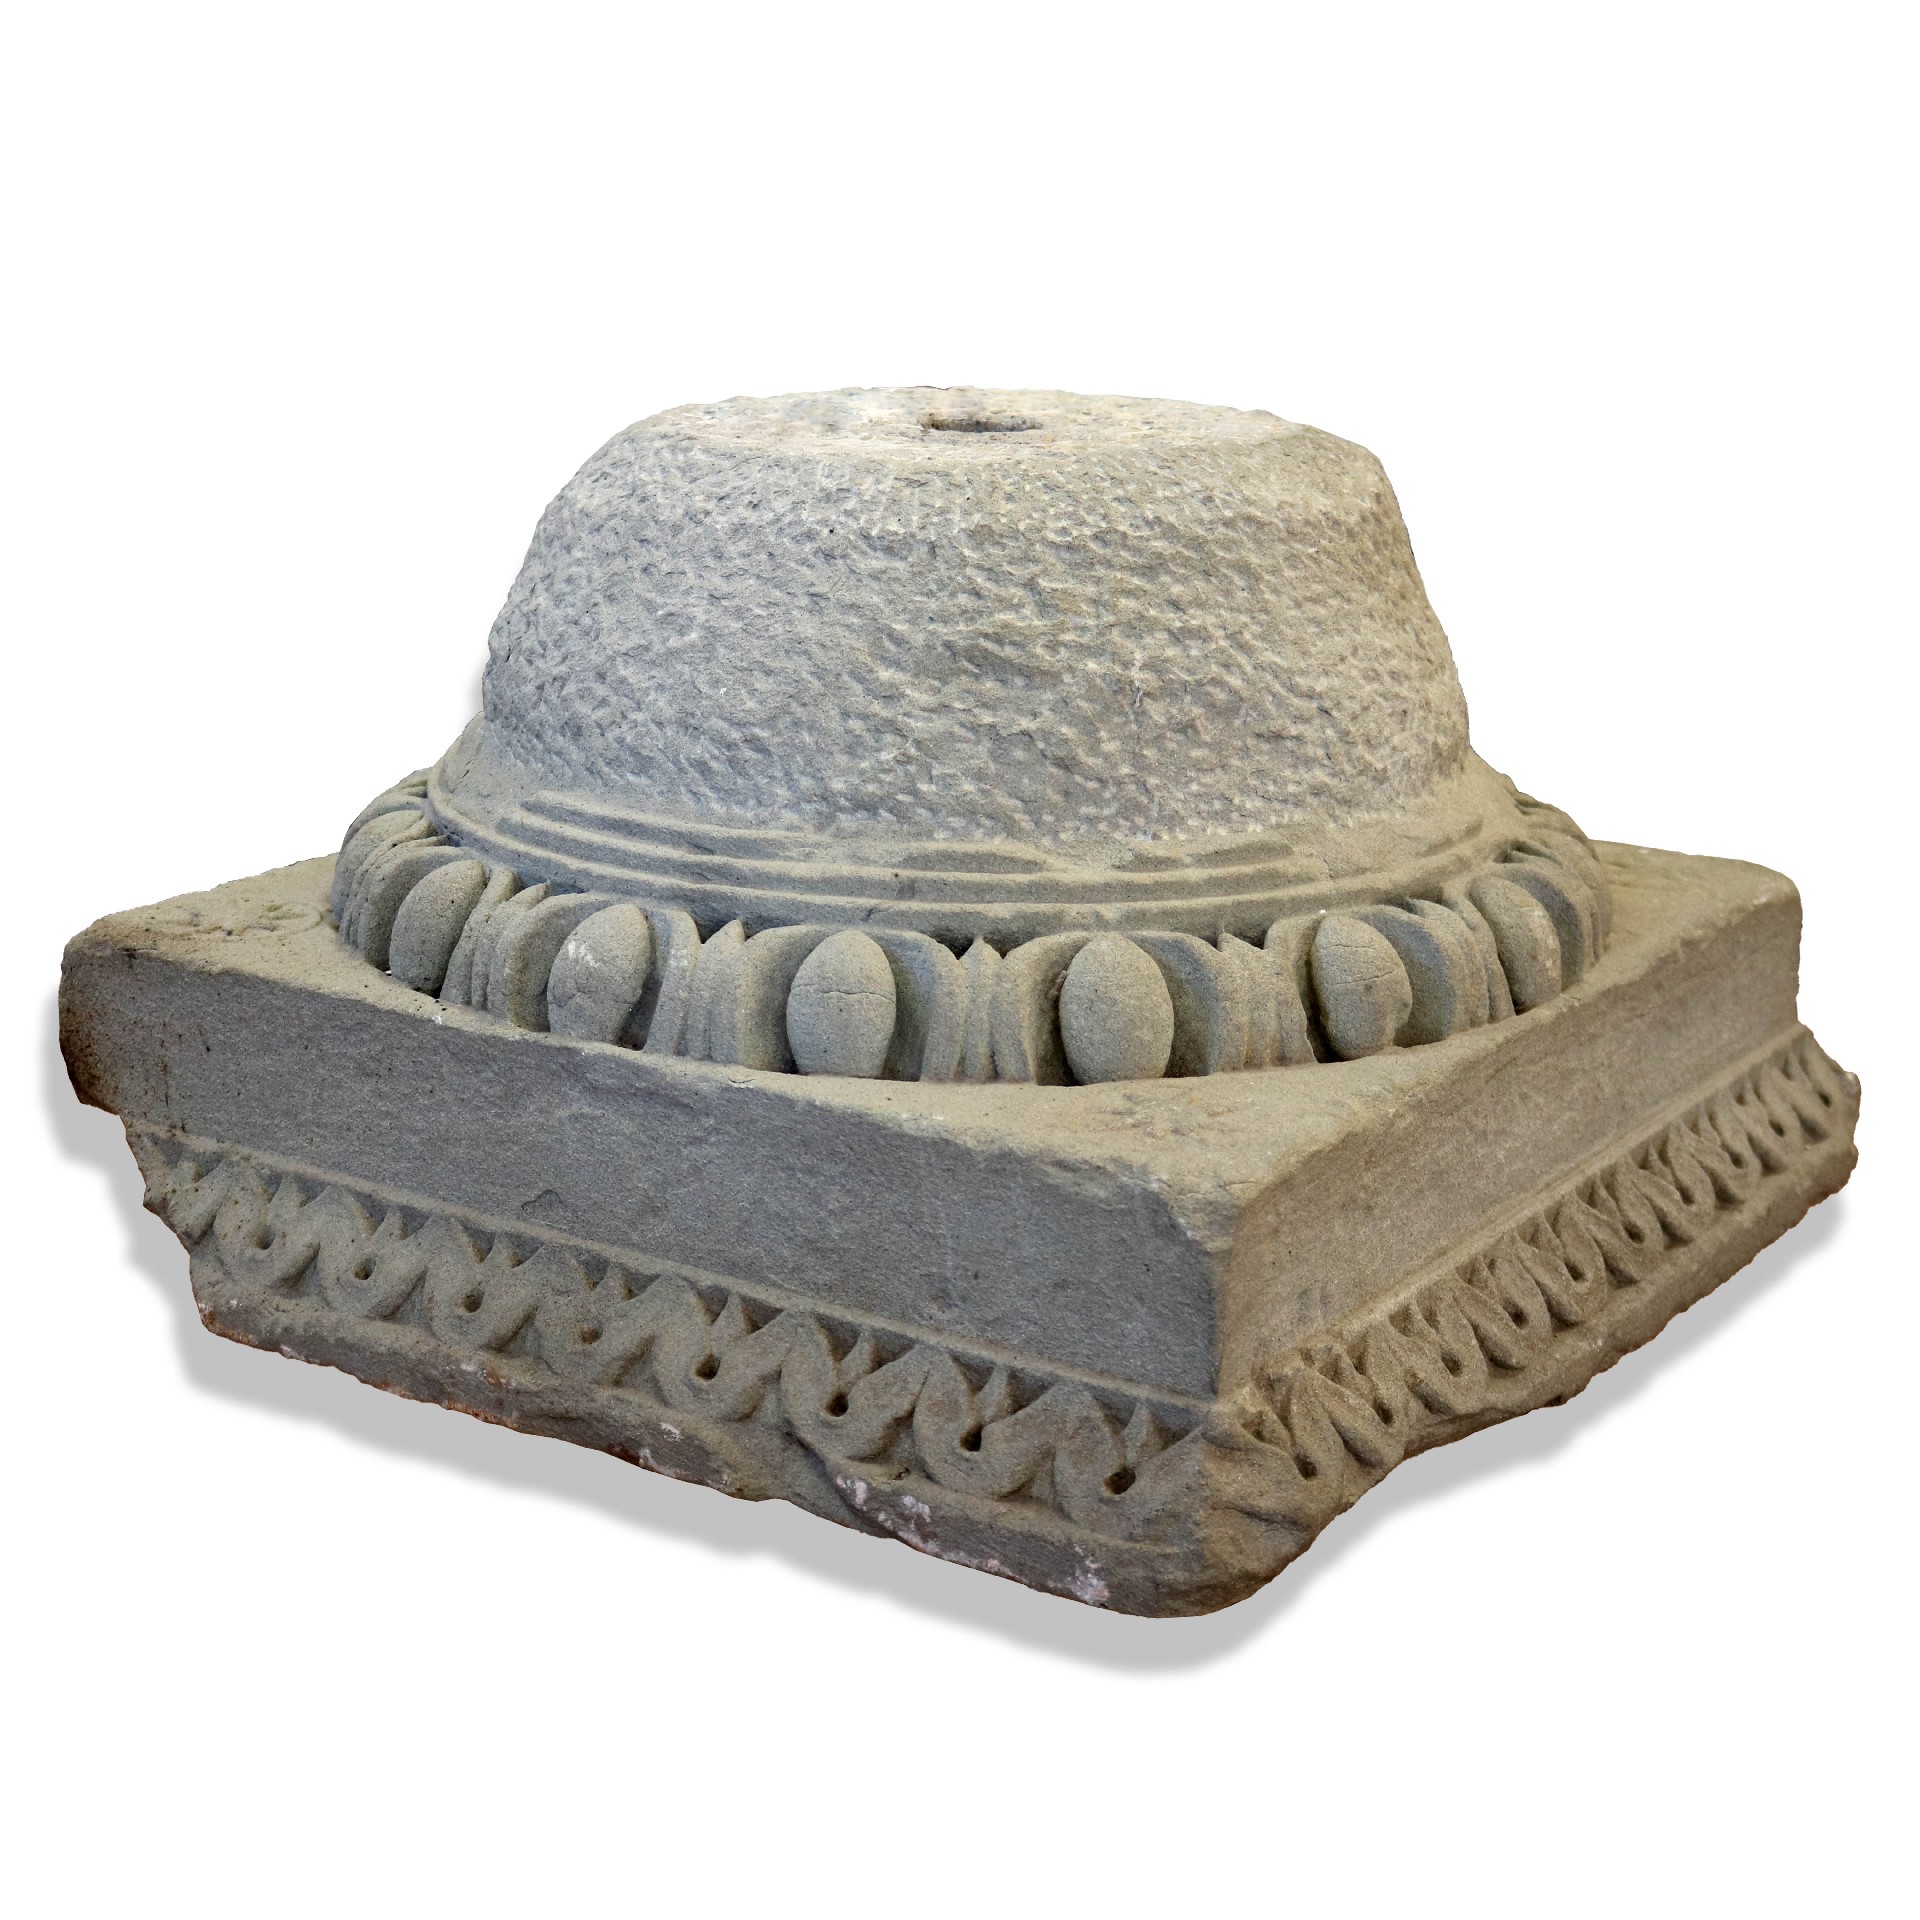 Antico capitello in pietra. - Capitelli basi per colonne - Architettura - Prodotti - Antichità Fiorillo